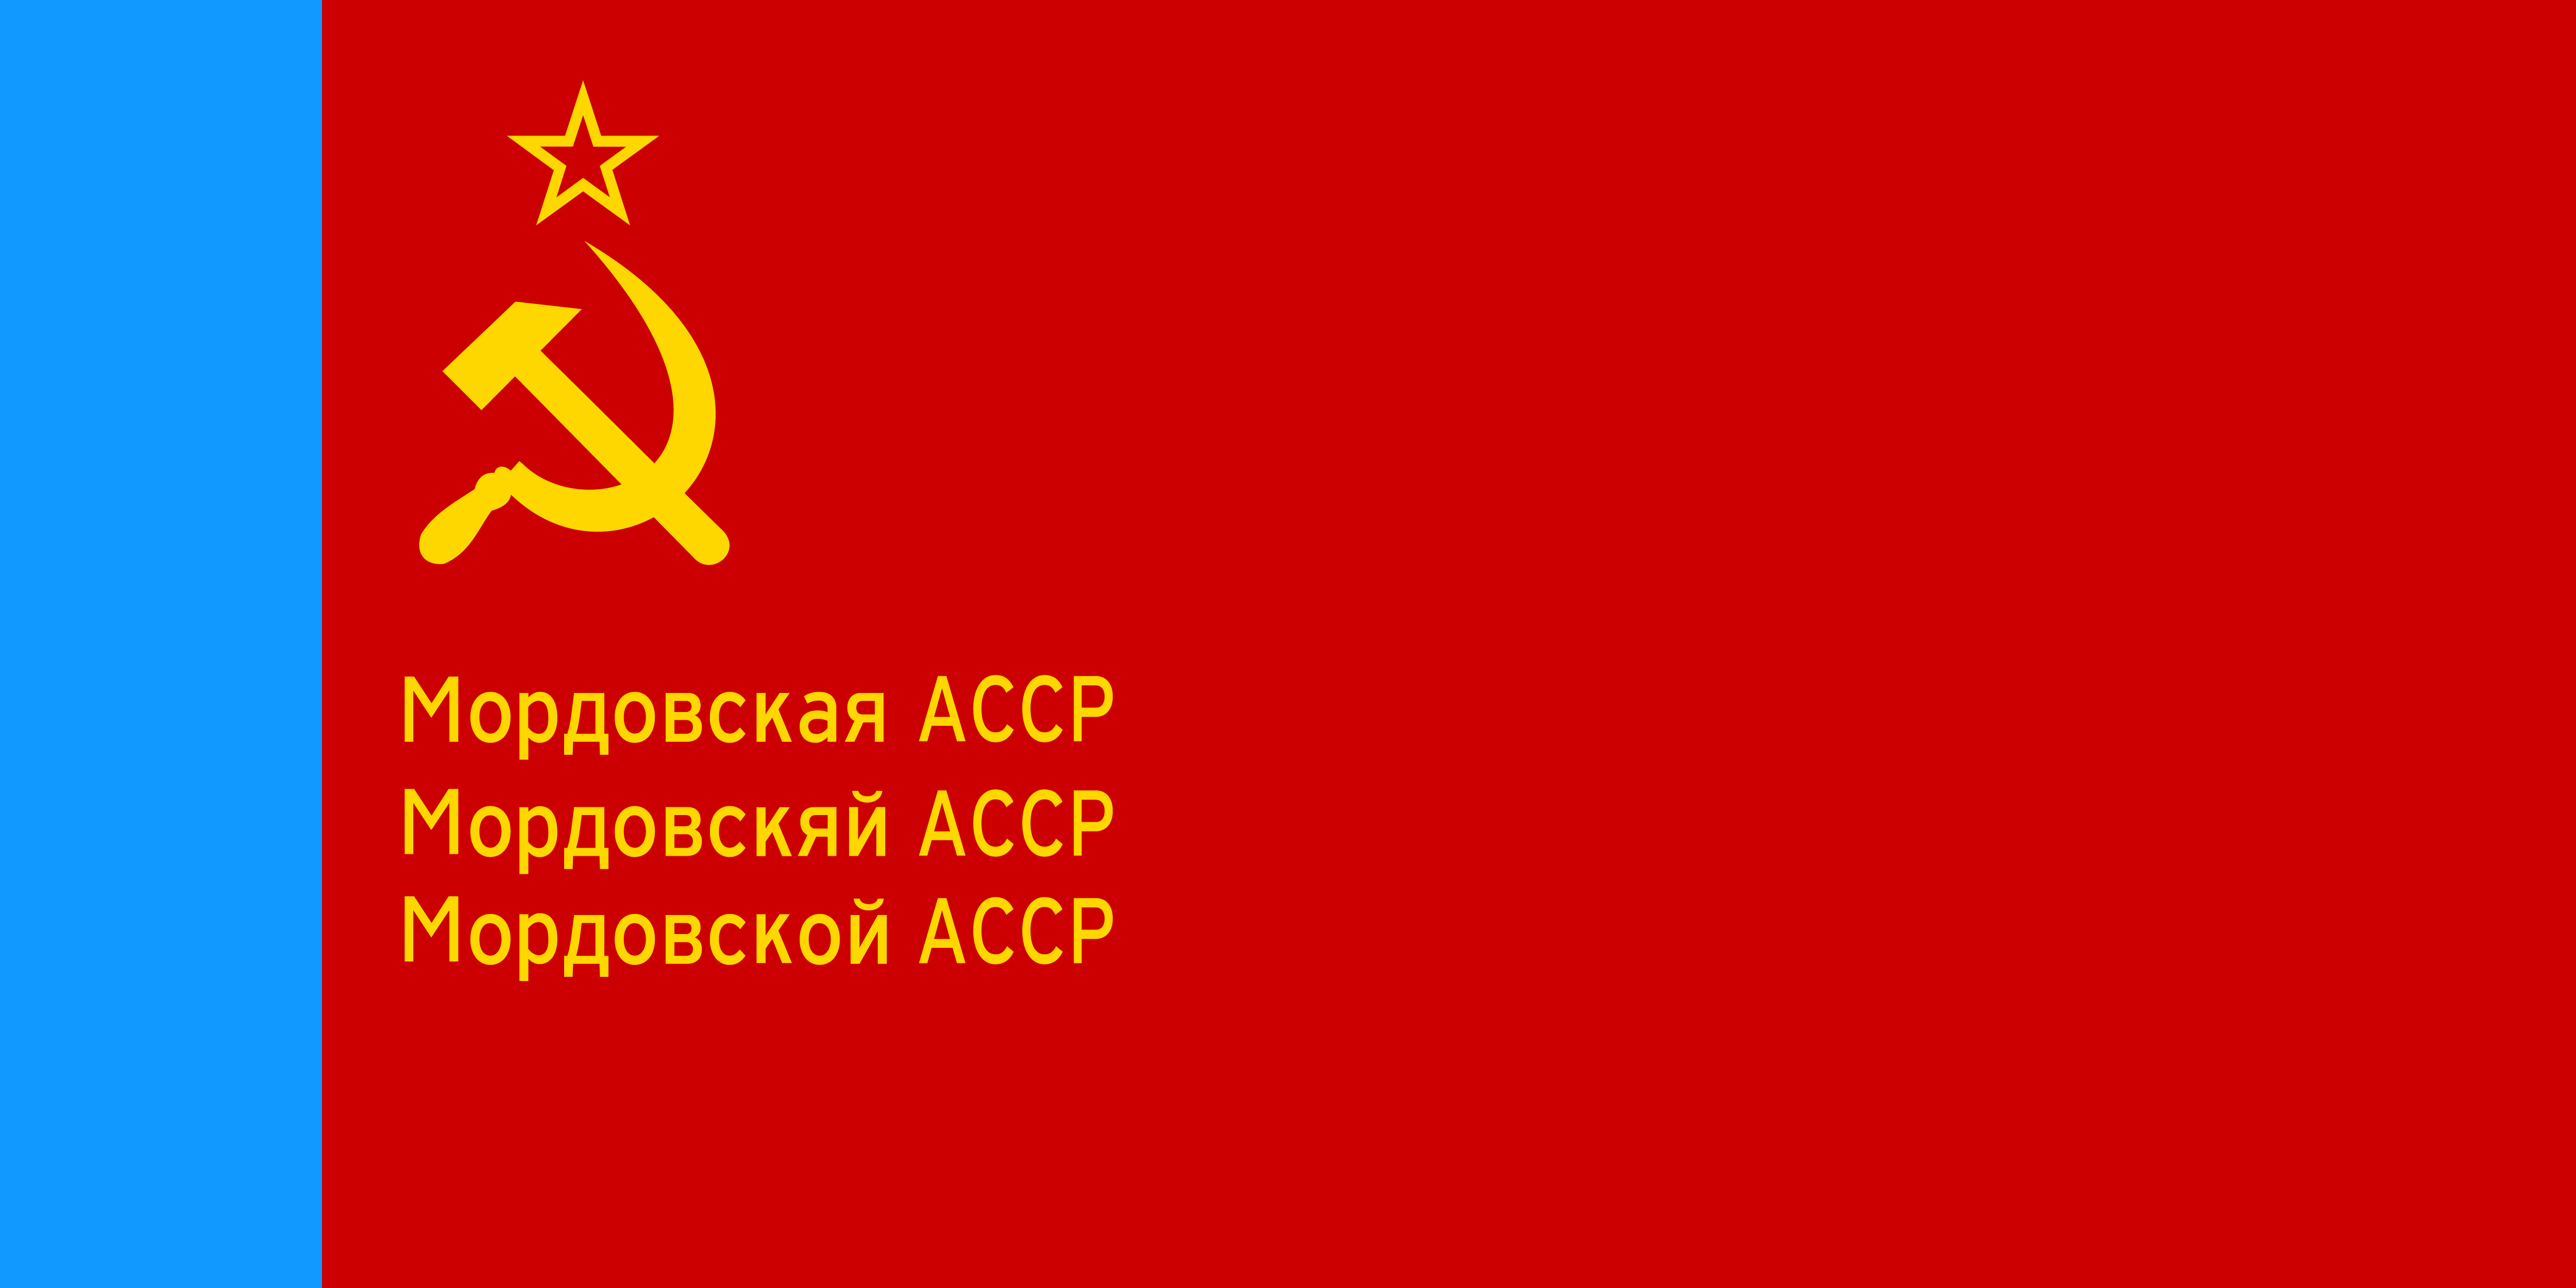 莫爾多瓦蘇維埃社會主義自治共和國